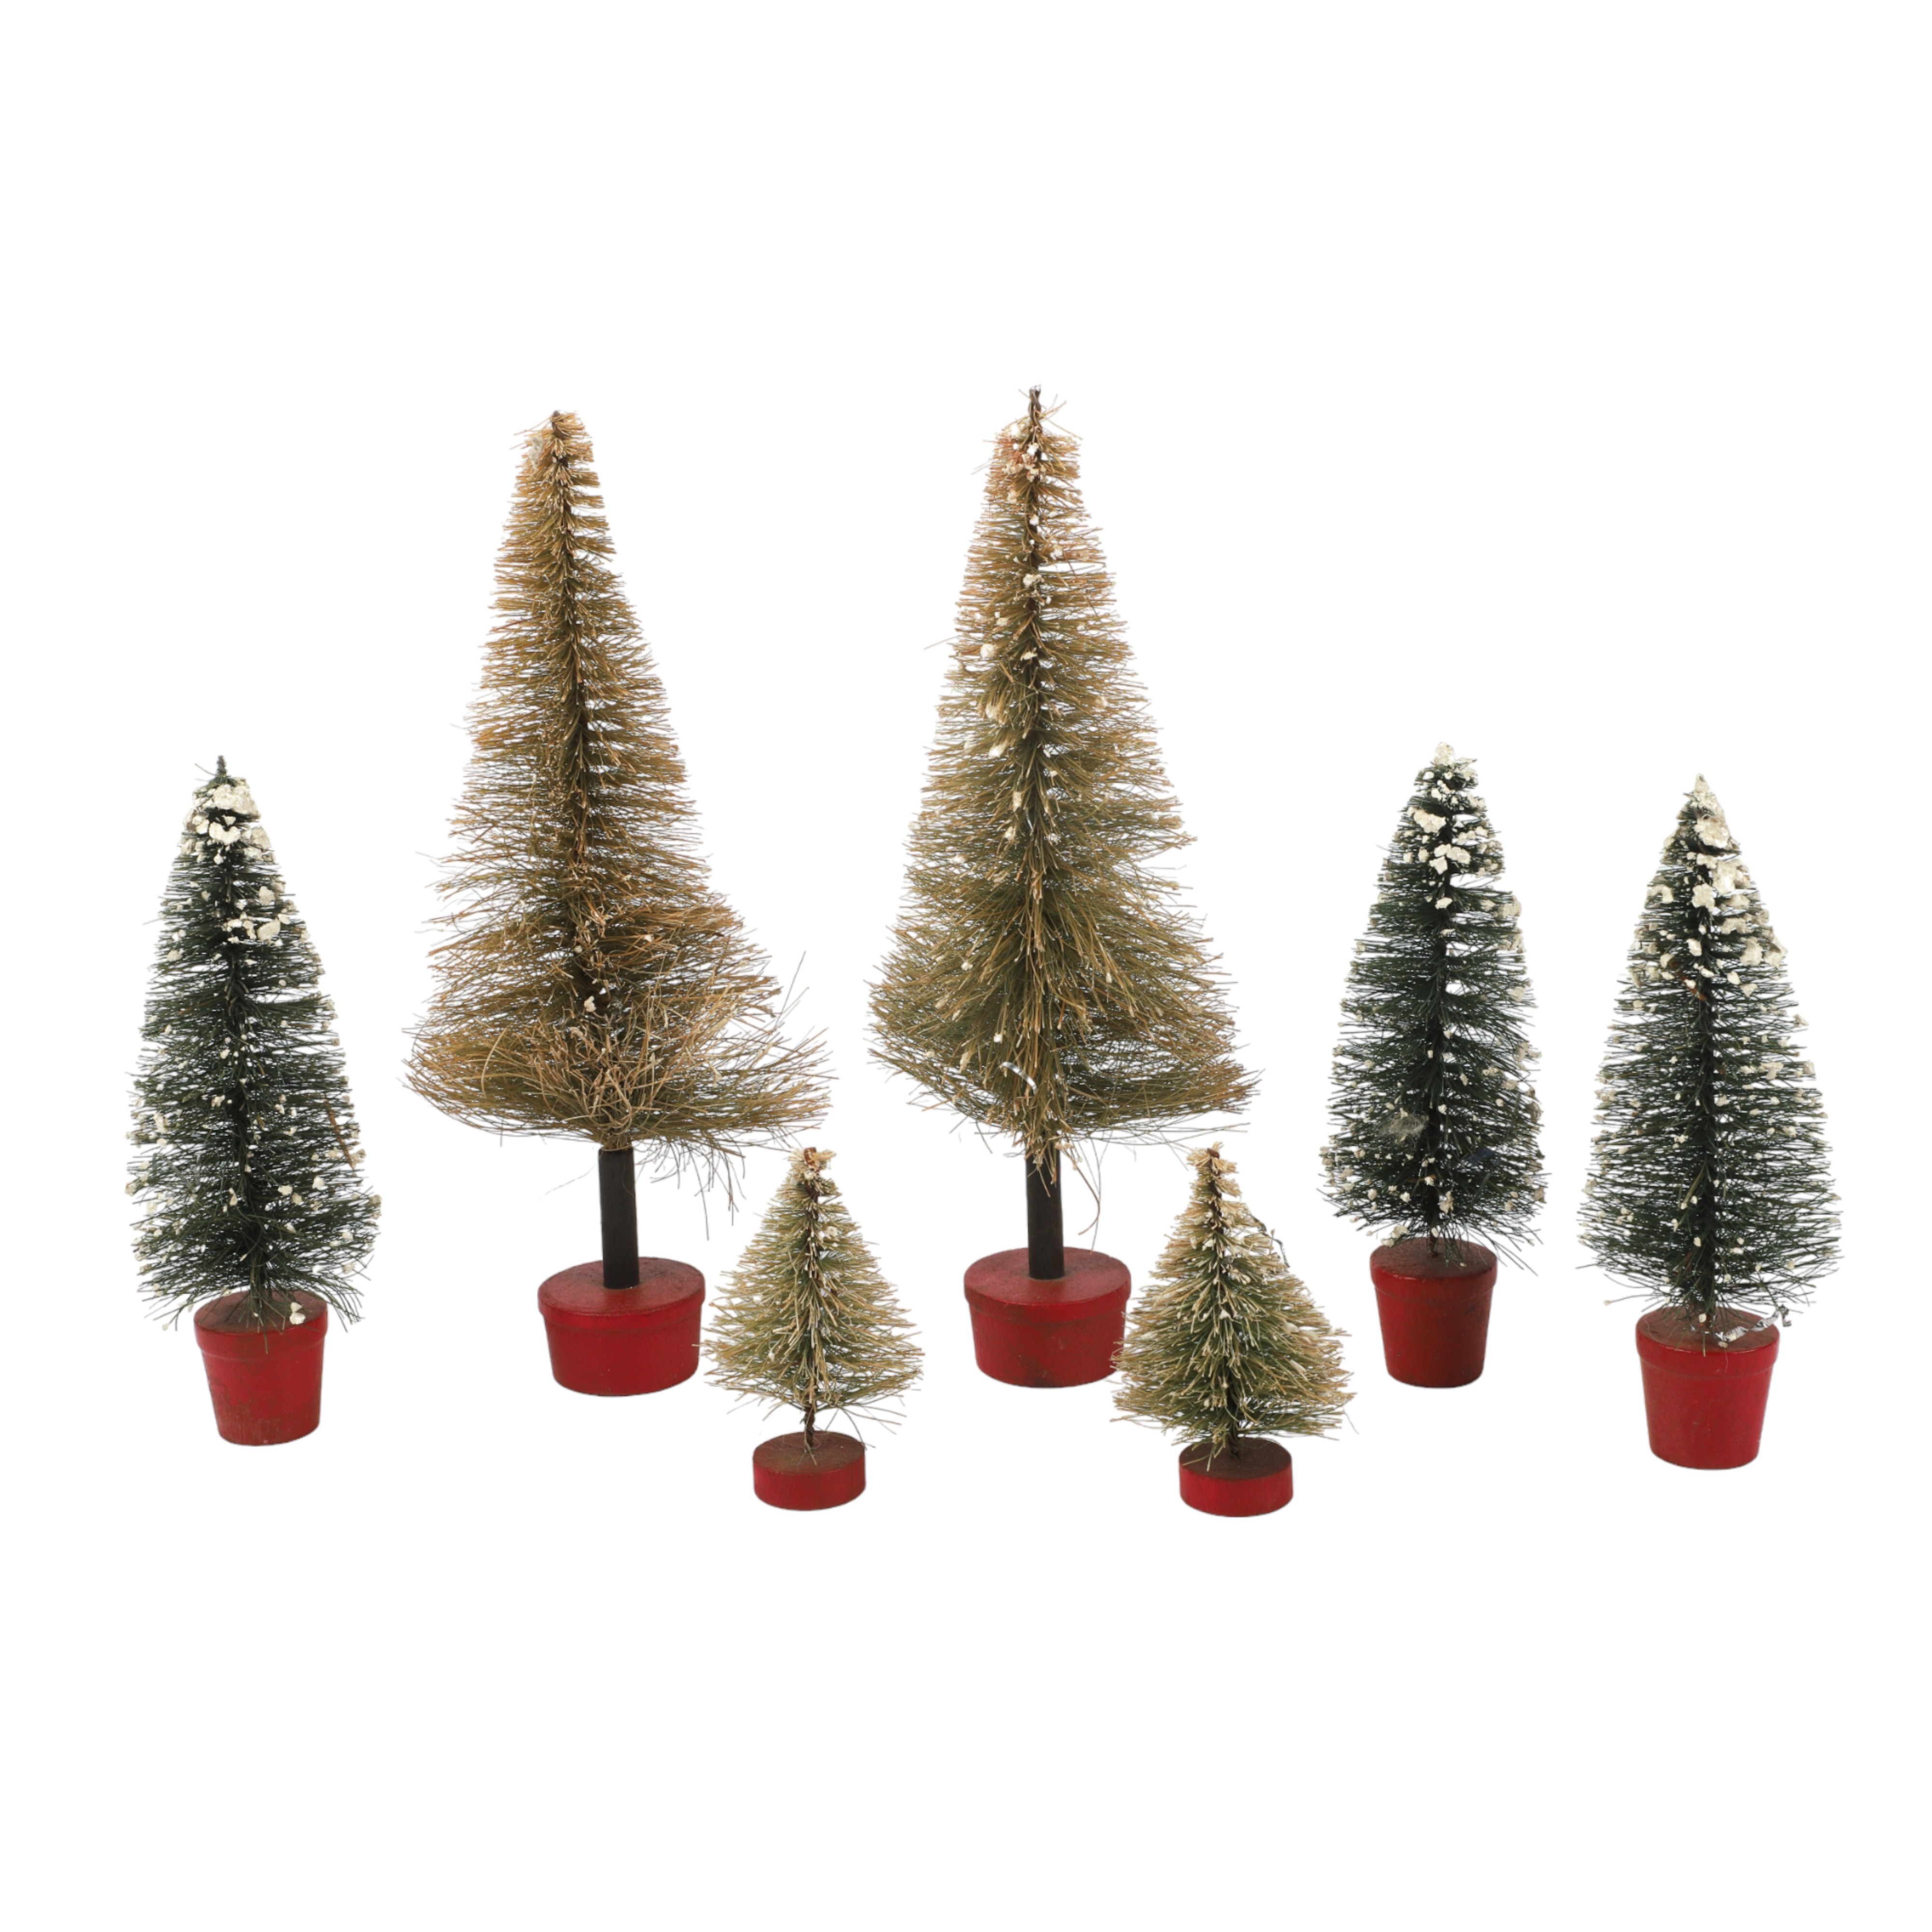 (7) Bottle brush Christmas trees,